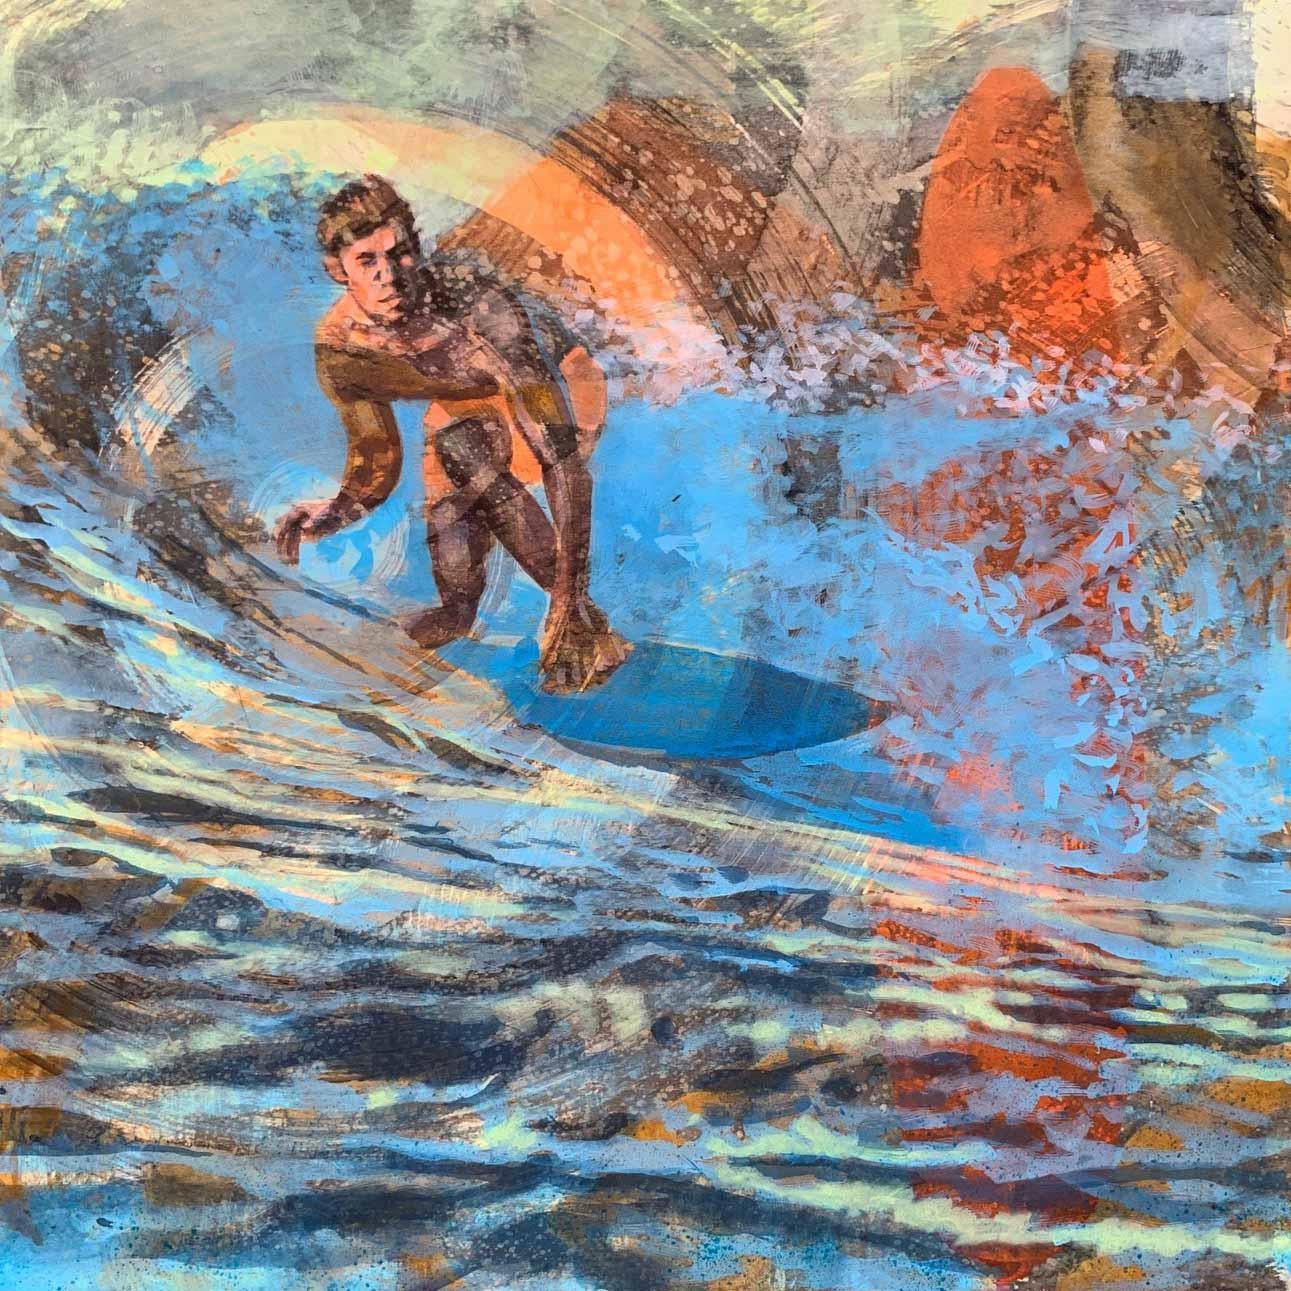 Carol Bennett Landscape Painting – Malibu Dawn Patrol, Surfer, Wasser, Gemälde, Blau, Orange, männliche Figur, Wellen